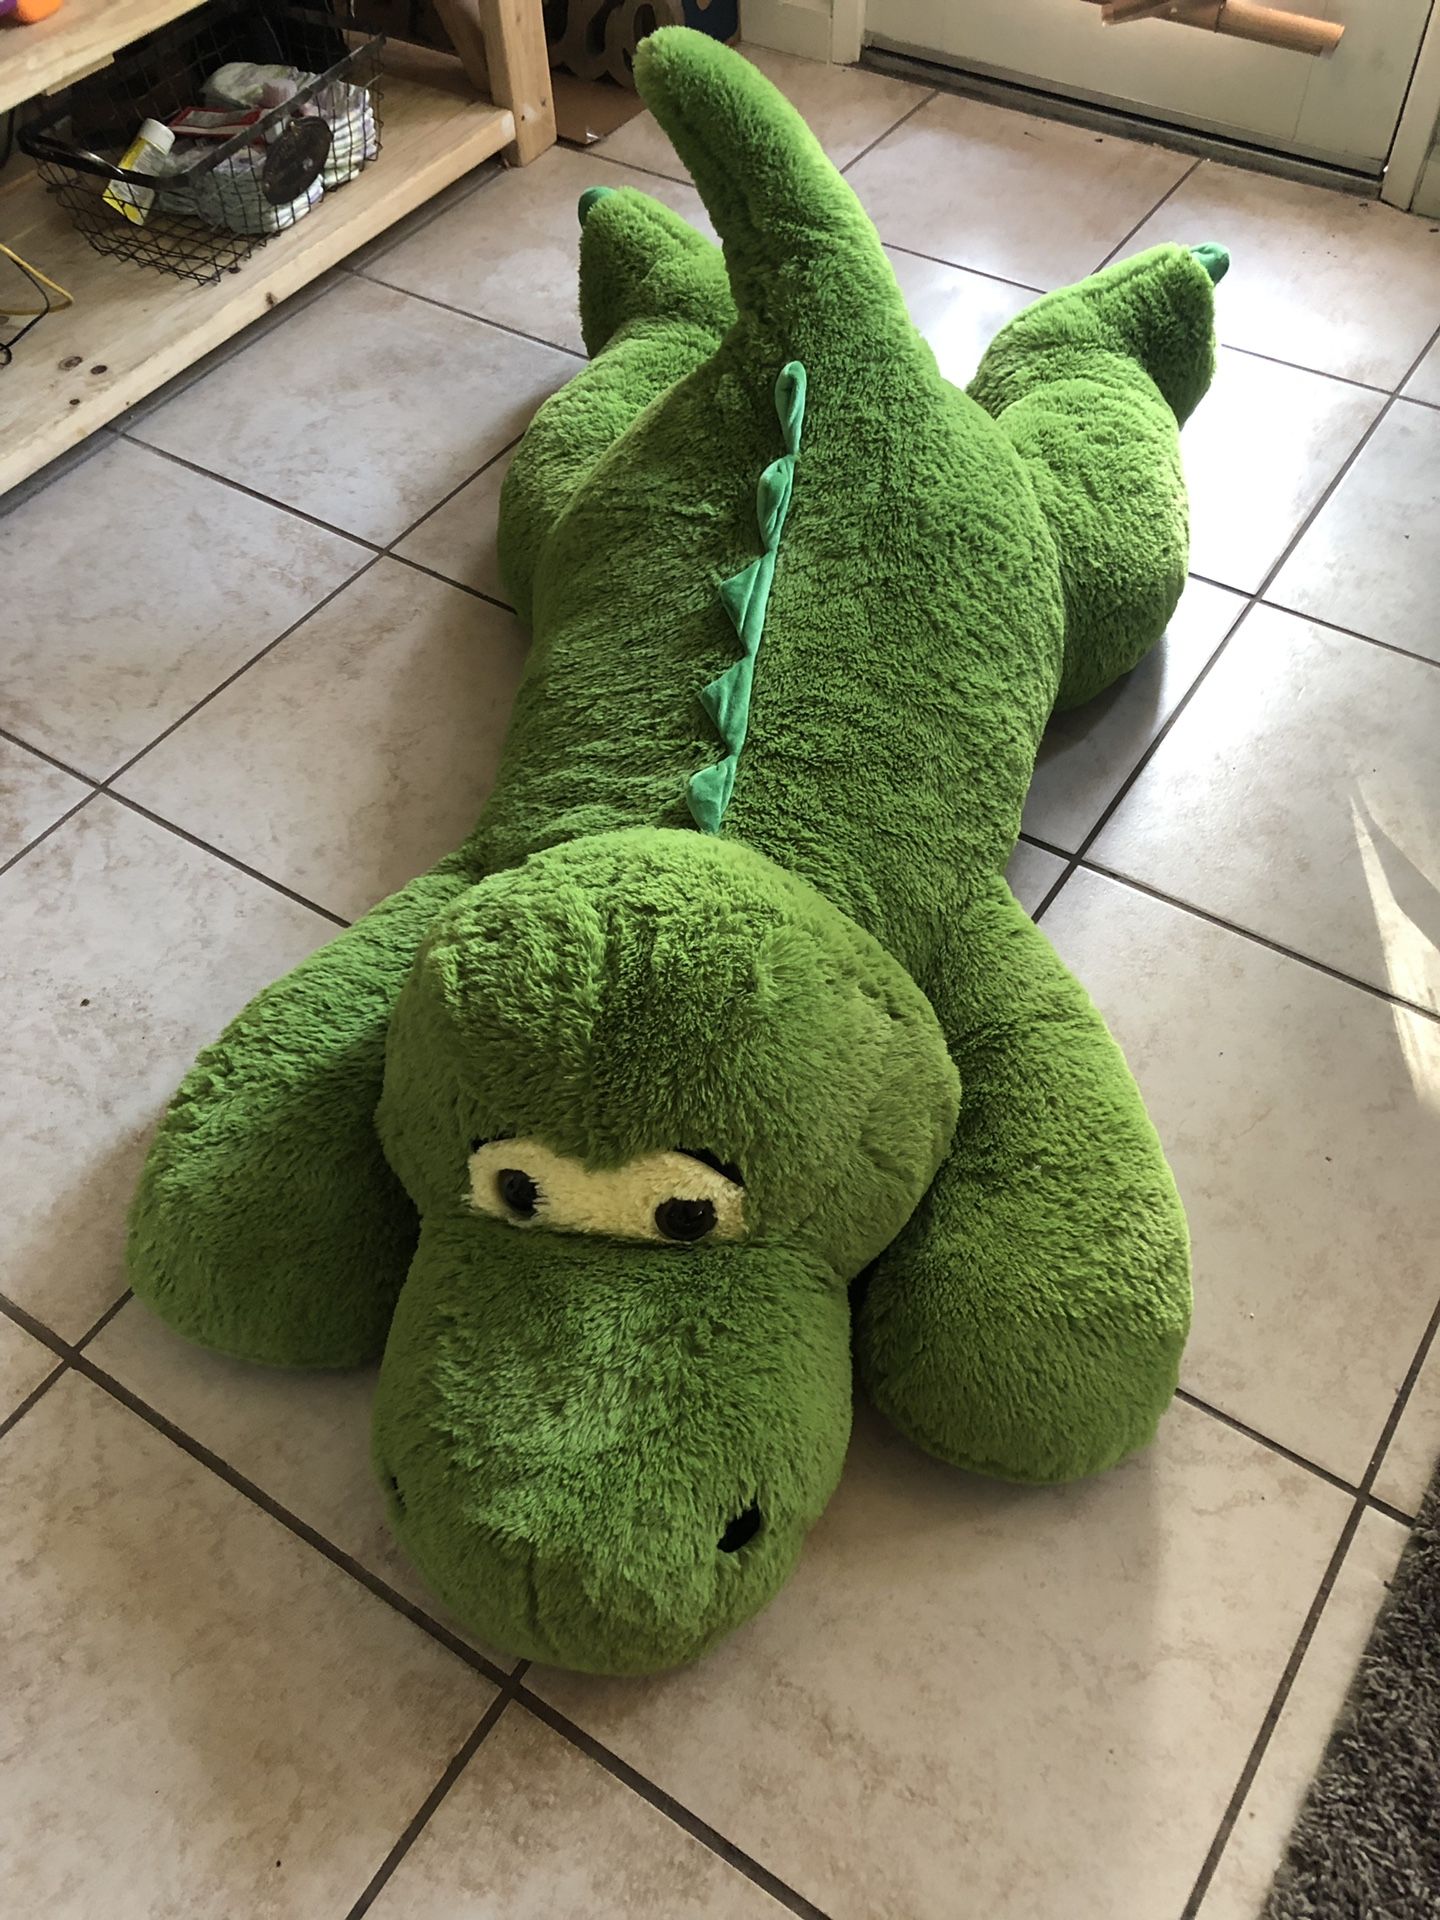 Oversized stuffed animal